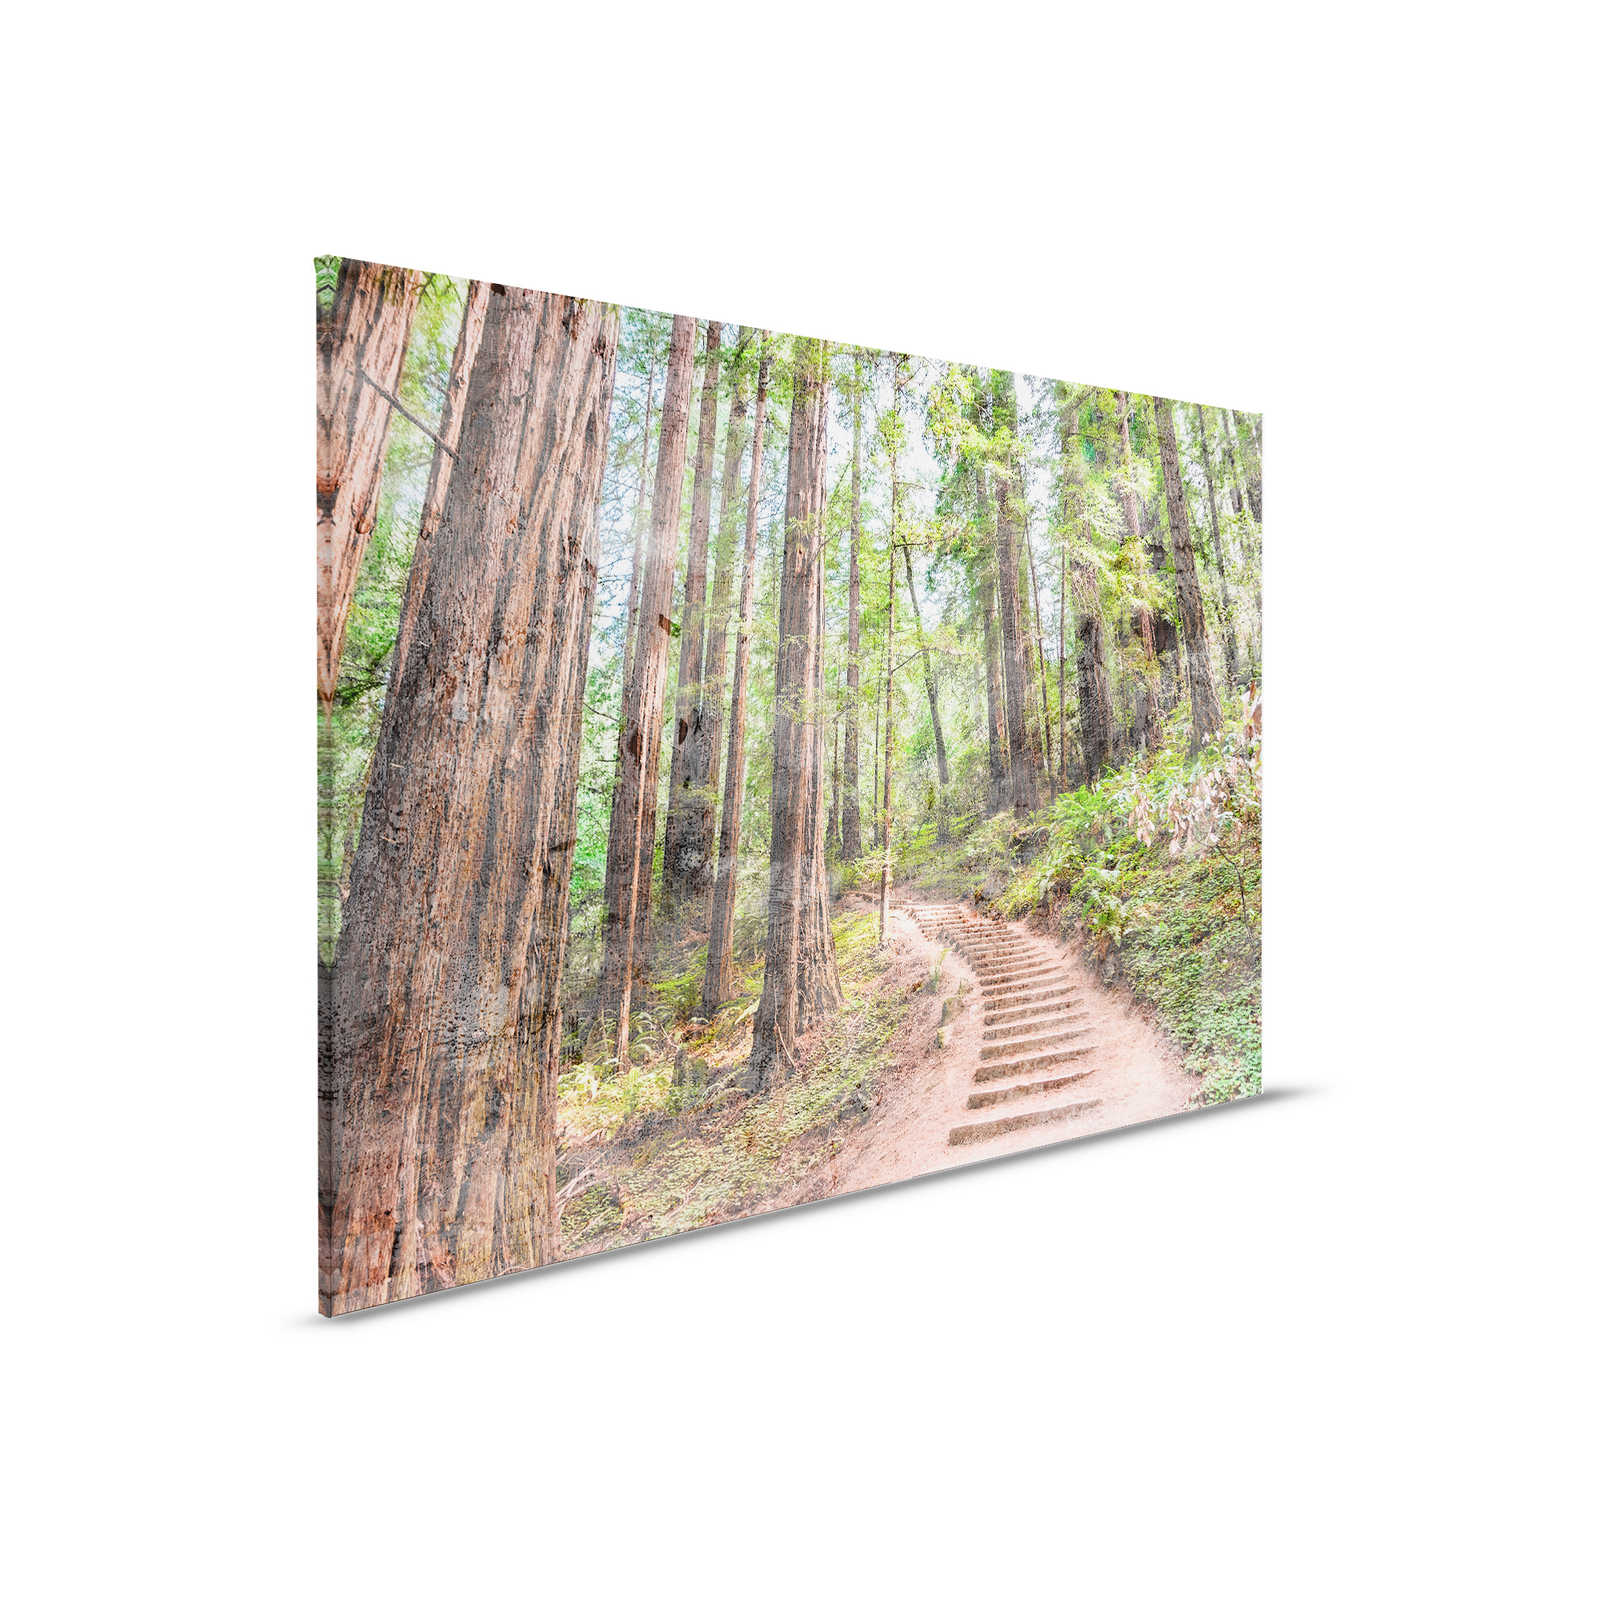 Lienzo con escalera de madera por el bosque | marrón, verde, azul - 0,90 m x 0,60 m
